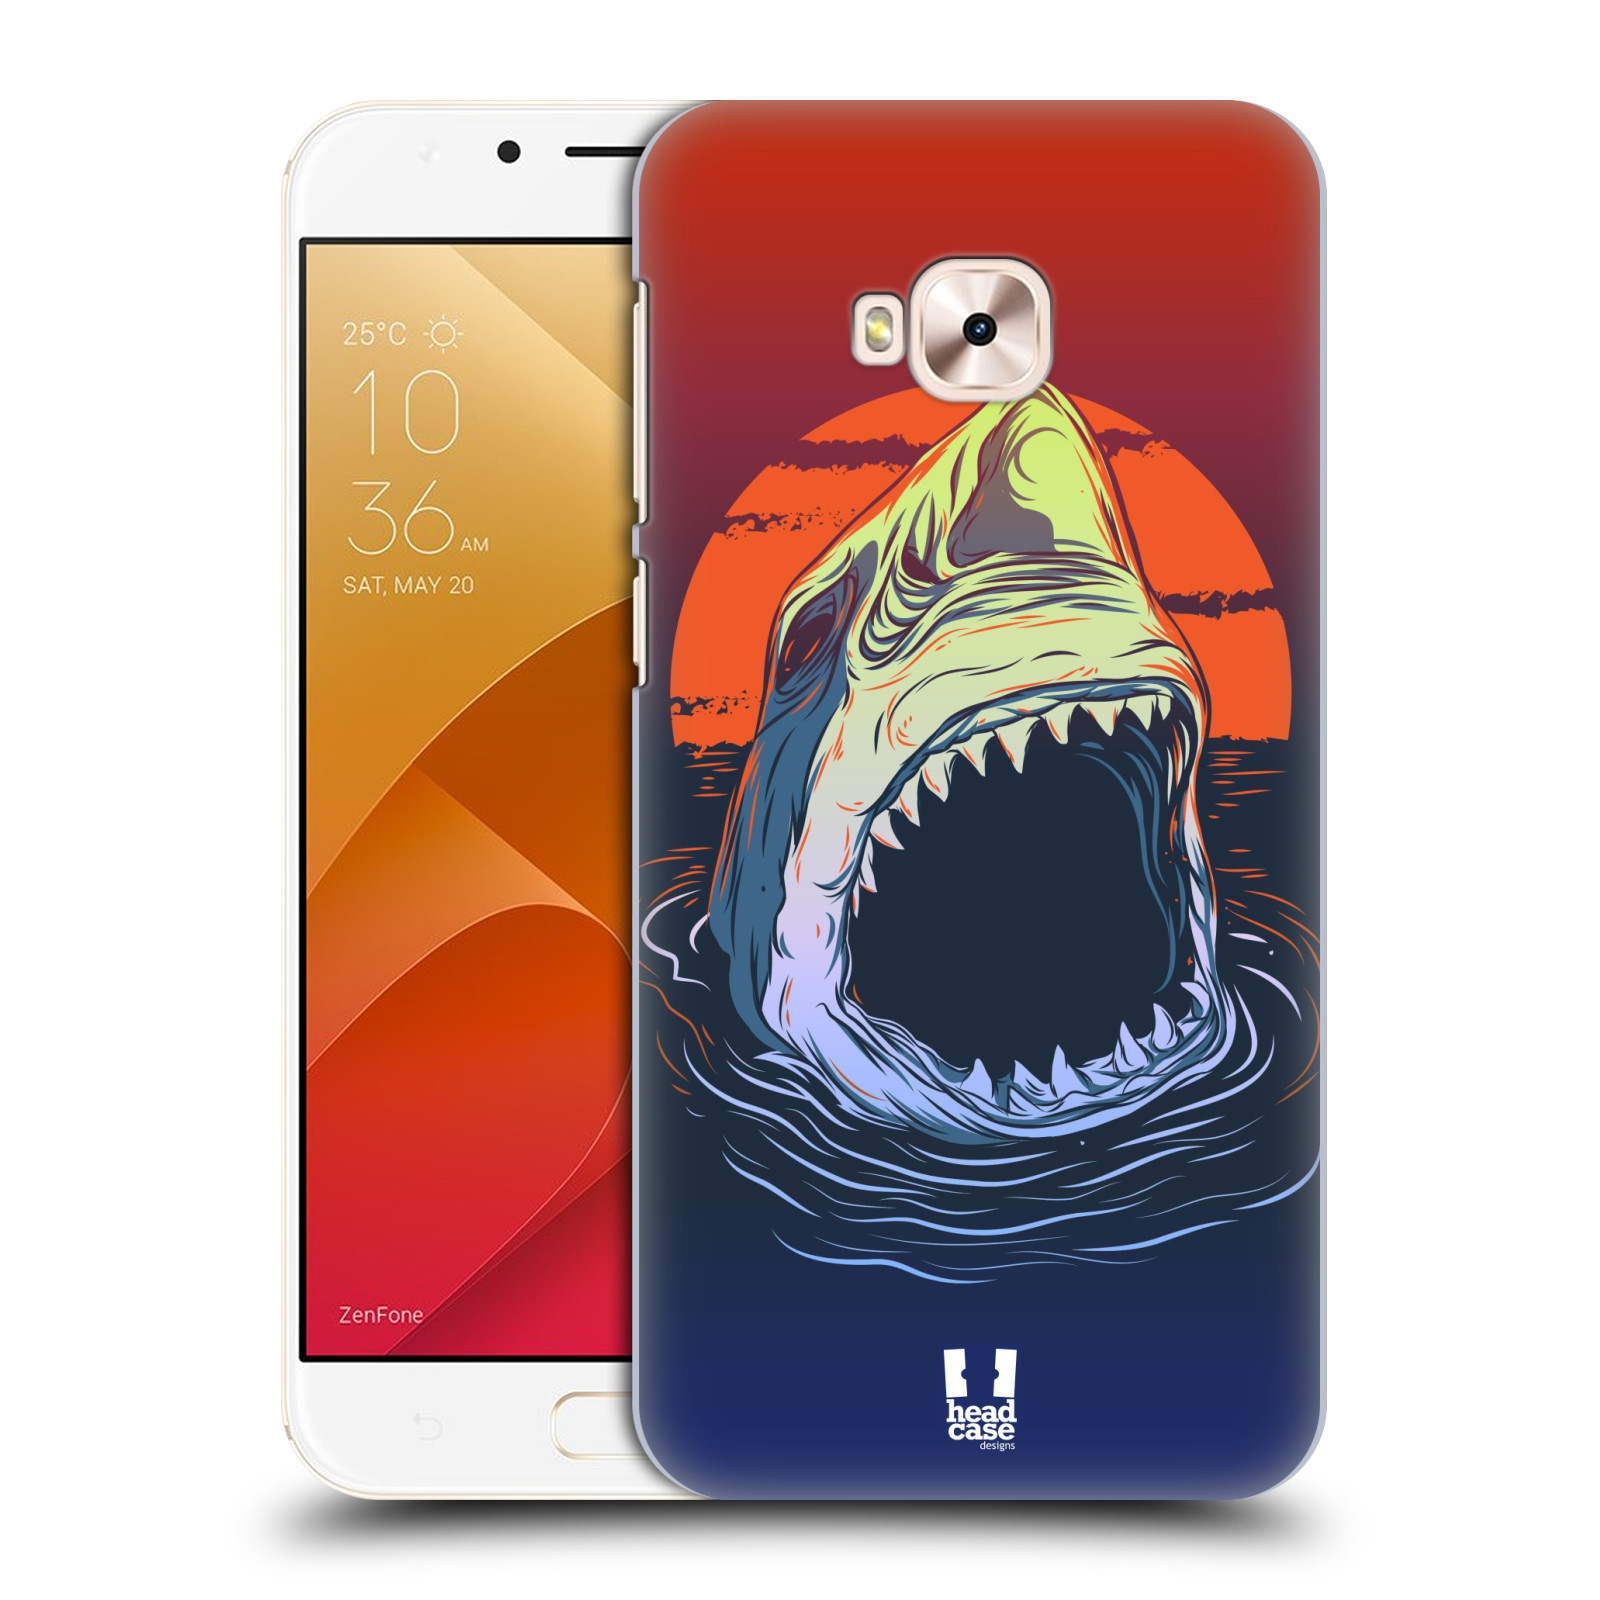 HEAD CASE plastový obal na mobil Asus Zenfone 4 Selfie Pro ZD552KL vzor mořská monstra žralok